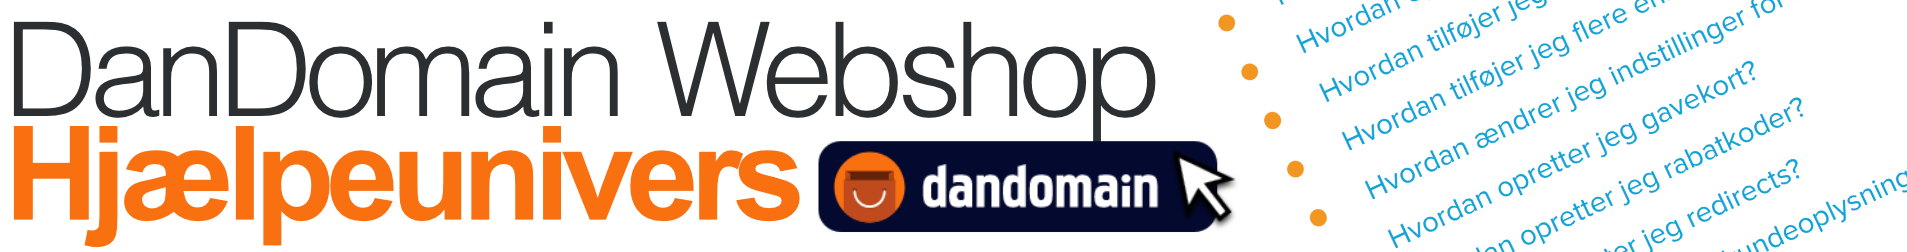 Klik for at gå til DanDomain Webshop dokumentation